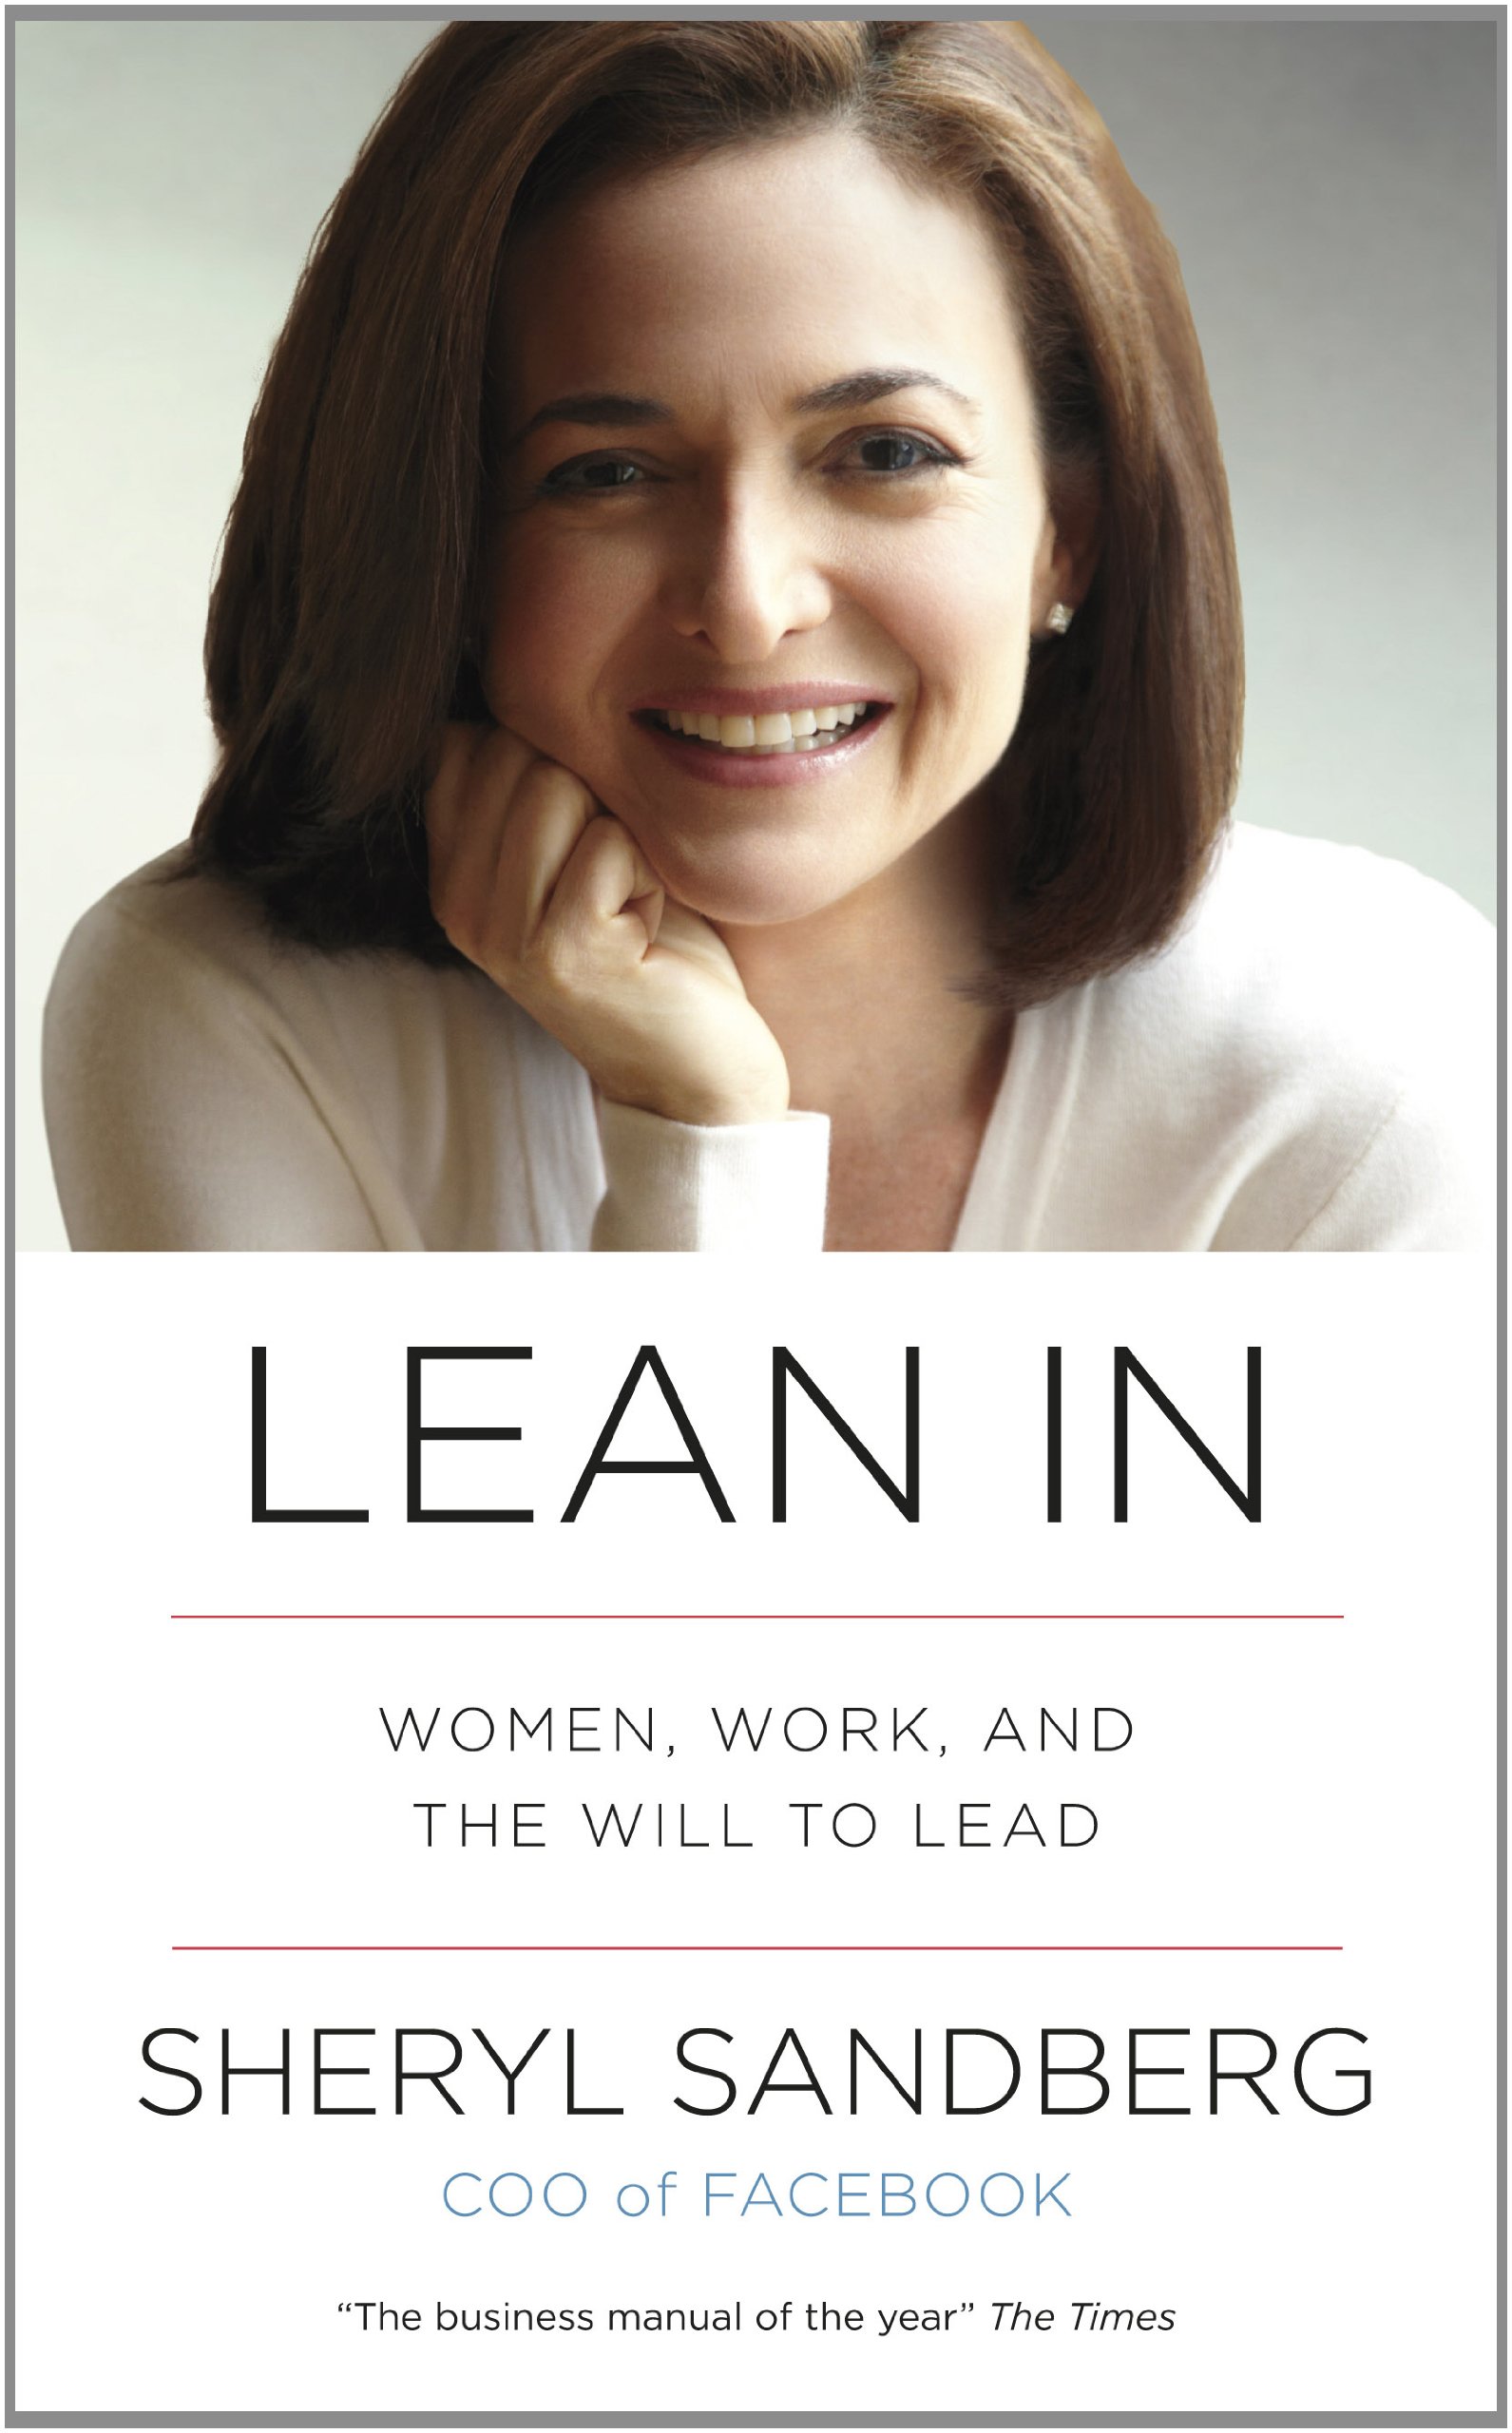 Cover image of Sheryl Sandberg's Book "Lean In"